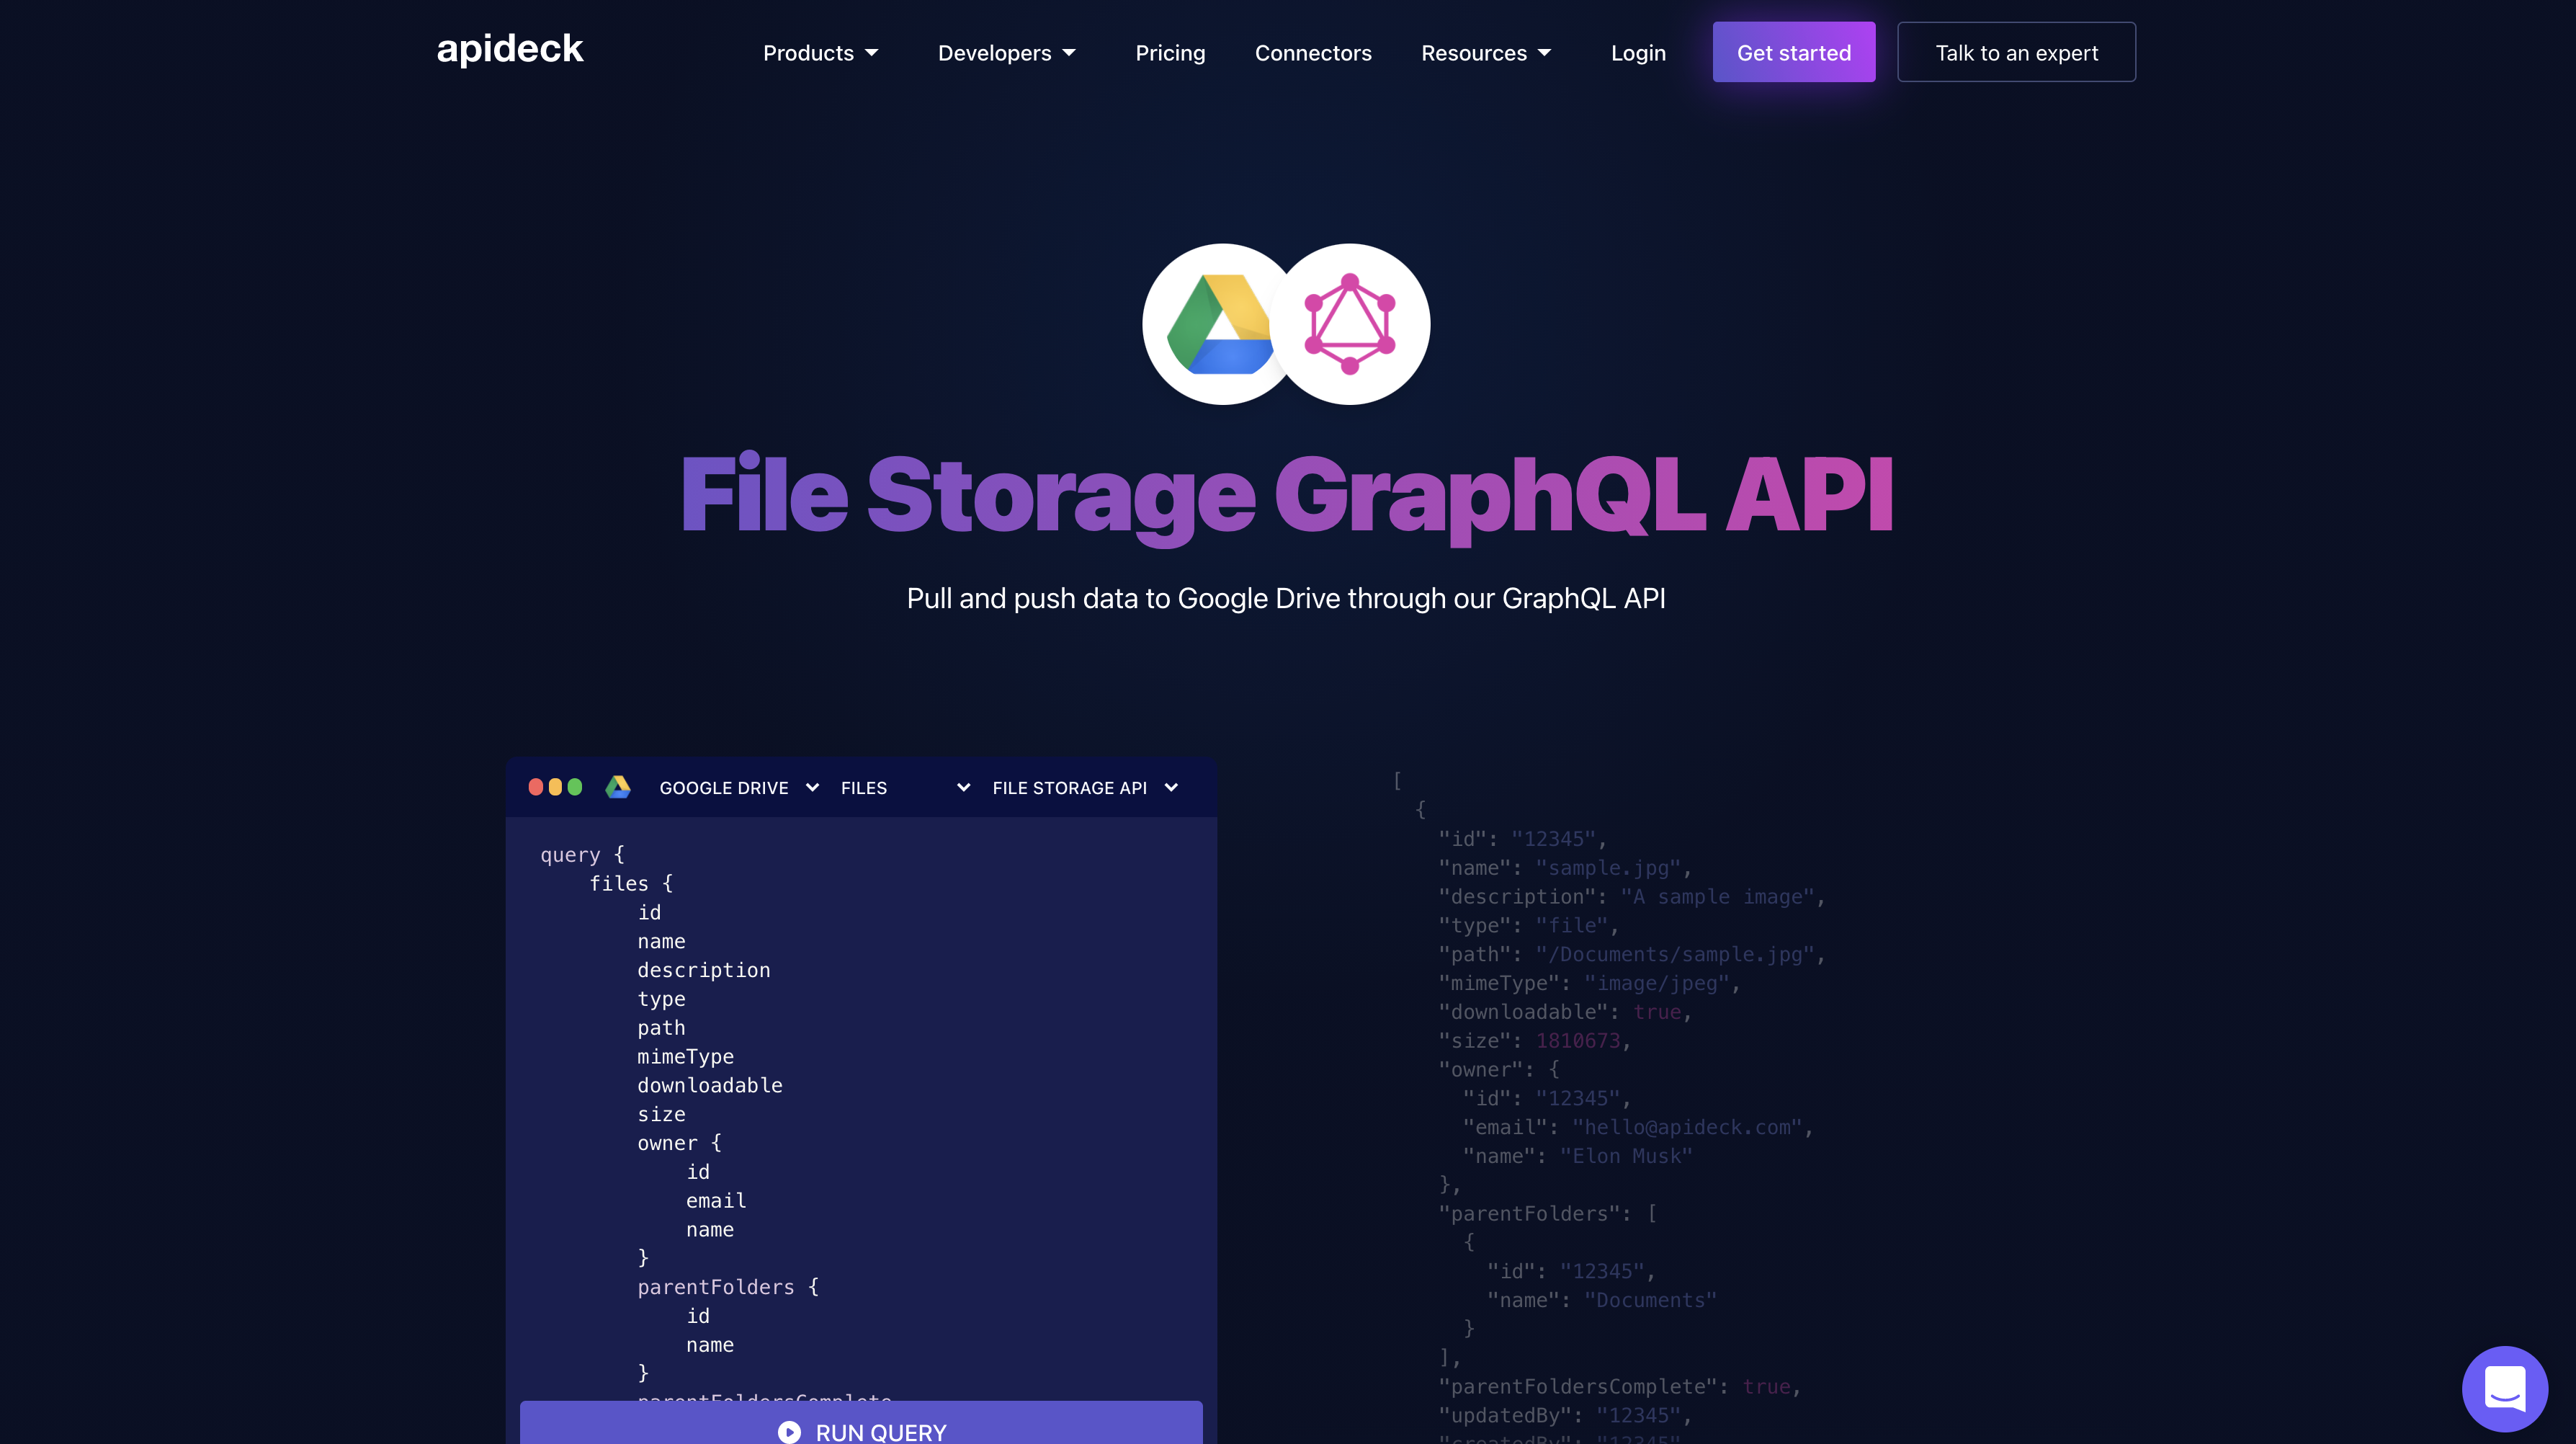 File Storage GraphQL API